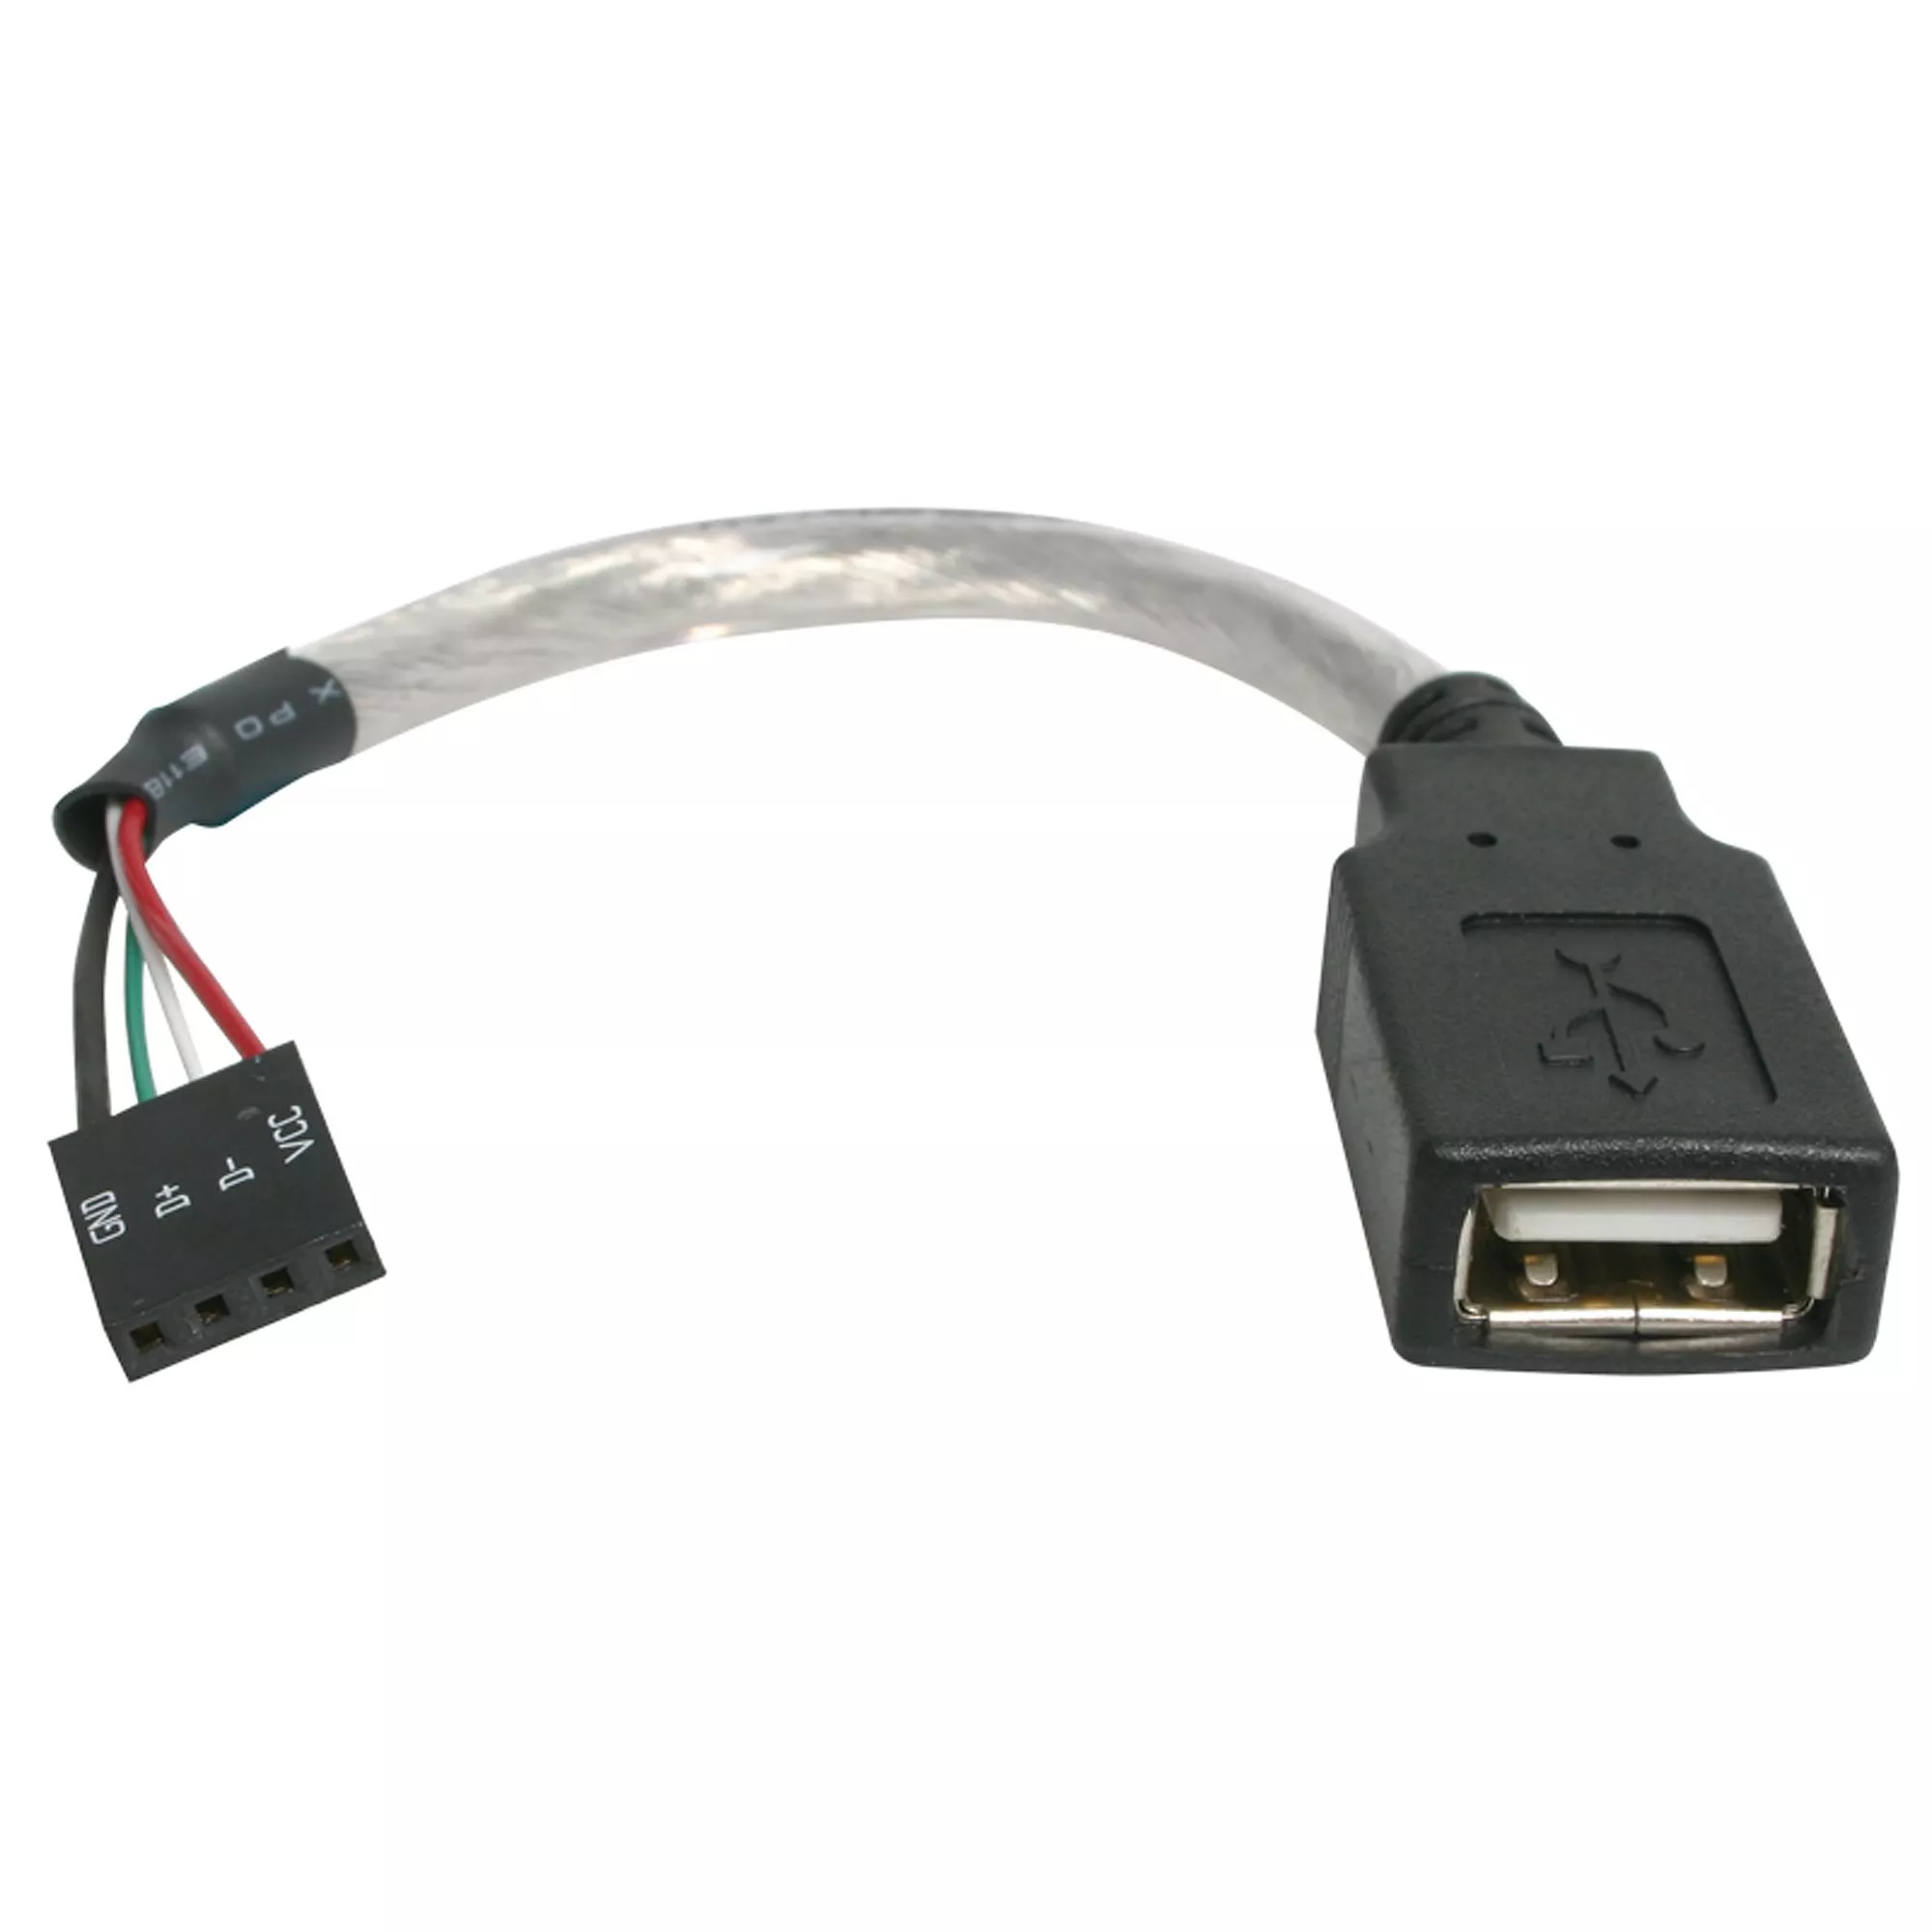 Revendeur officiel StarTech.com Câble USB 2.0 de 15 cm - USB A femelle vers